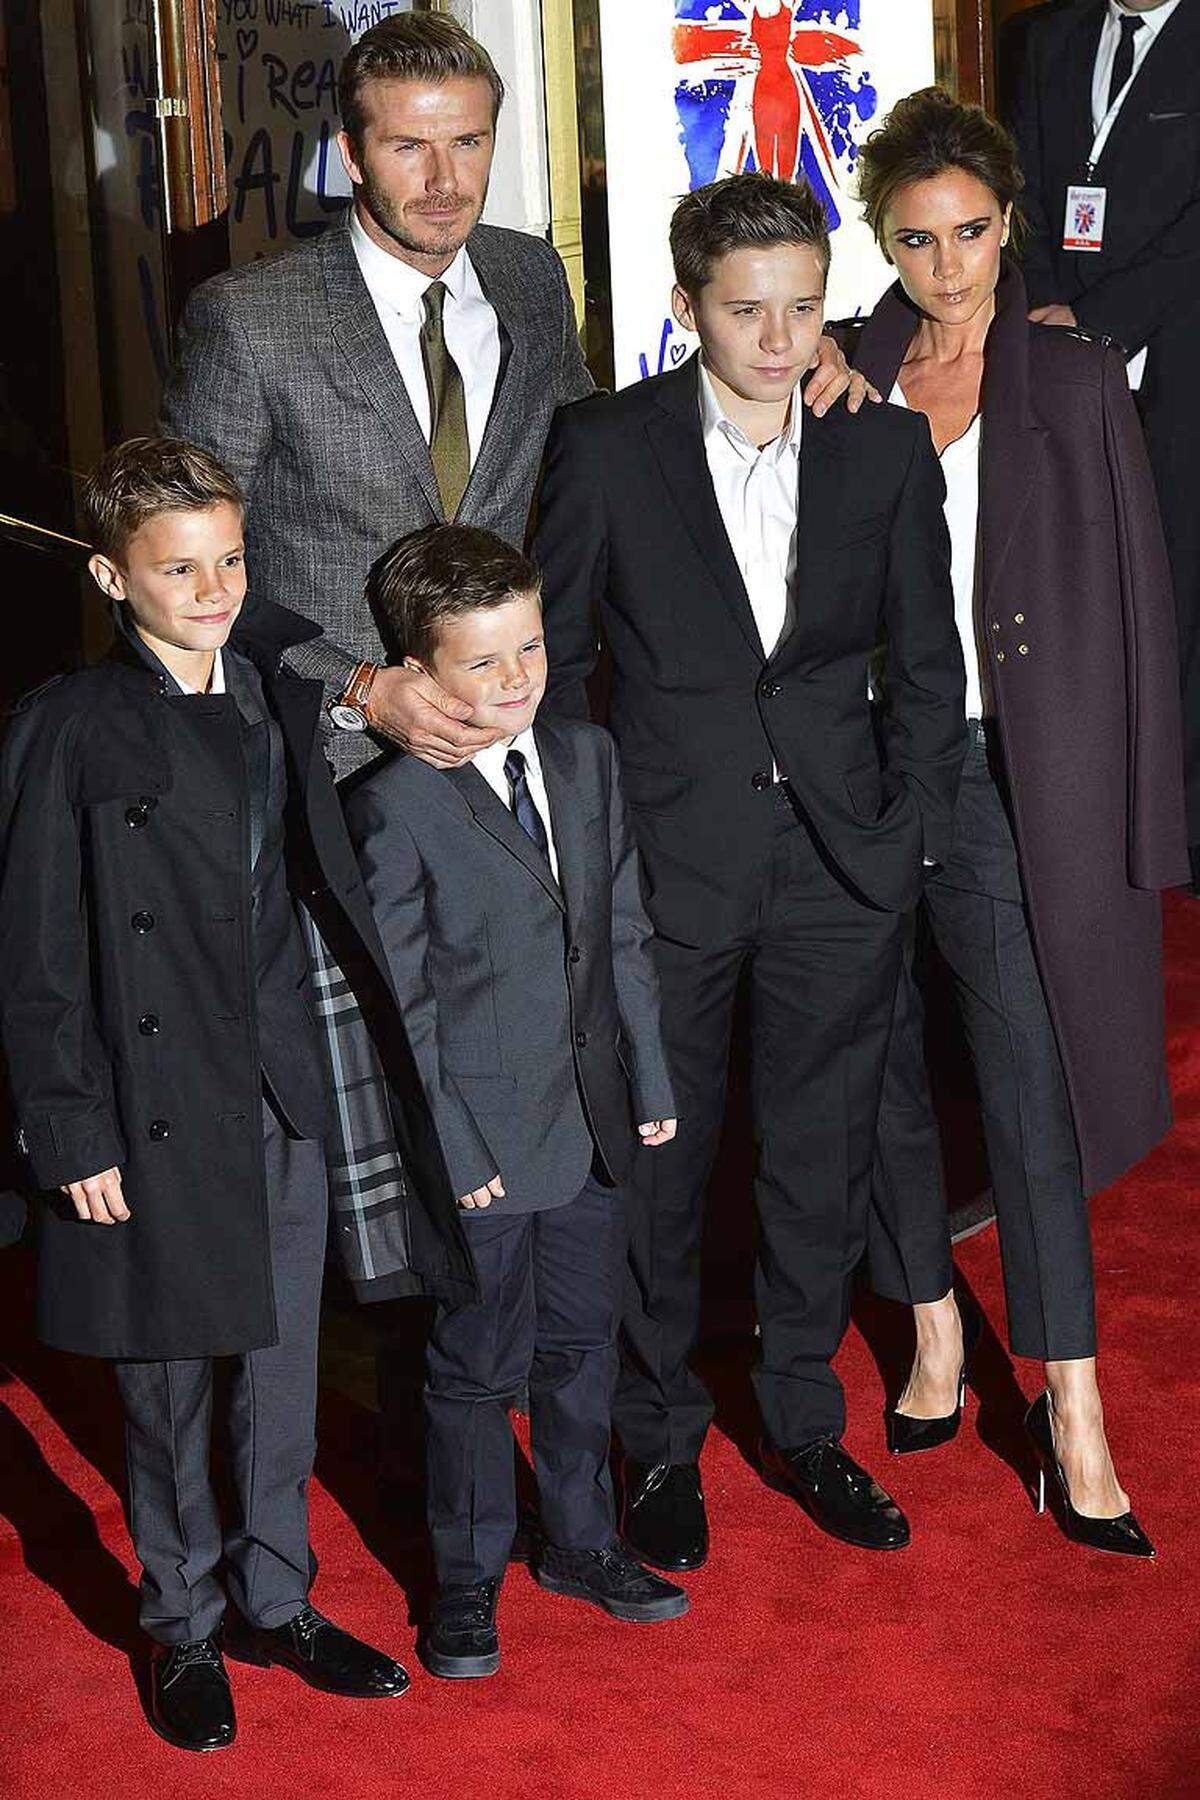 Posh Spice führt seit 1999 eine schlagzeilenarme Ehe mit dem britischen Fußballstar David Beckham, die beiden haben mittlerweile vier Kinder zusammen. Während ihre musikalische Solo-Karriere kaum wahrgenommen wurde, fasste sie als Model (Armani), besonders aber als Designerin in der Modebranche Fuß.